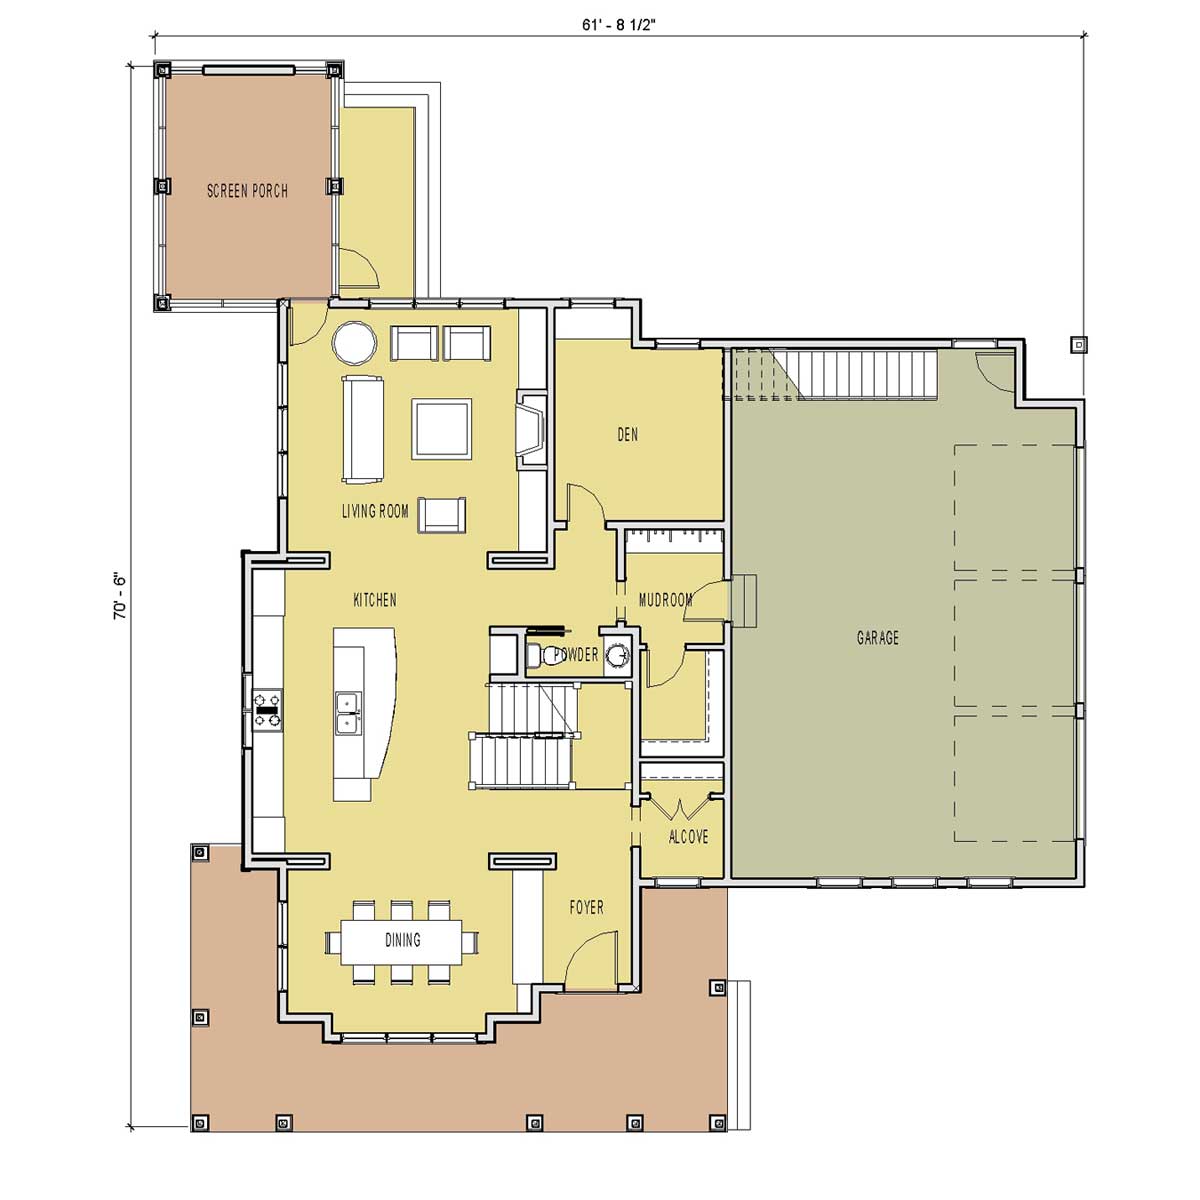 Apartment Unit Plans